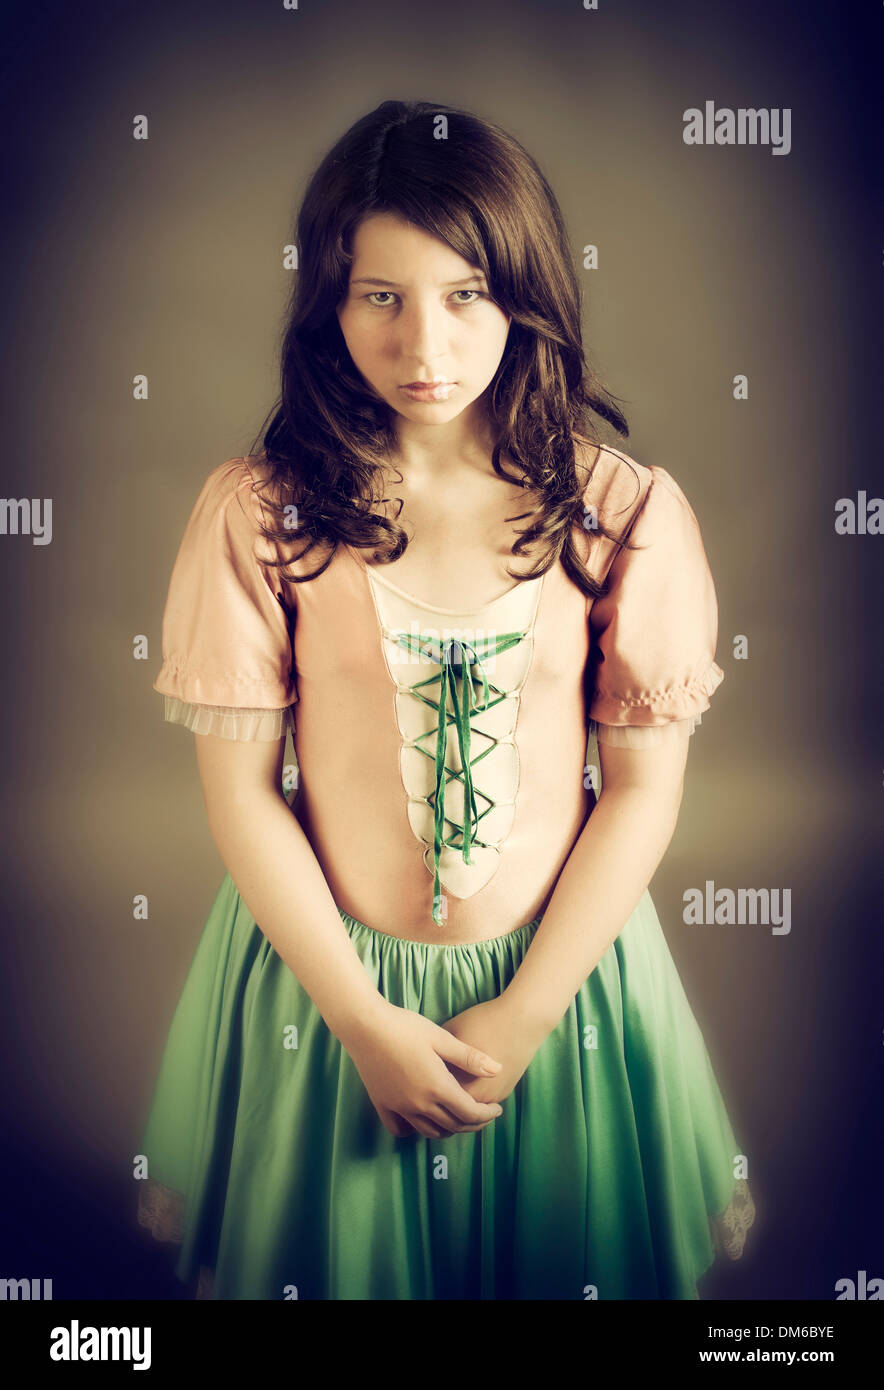 Ein altmodisches Kleid suchen traurige Mädchen Stockfotografie - Alamy